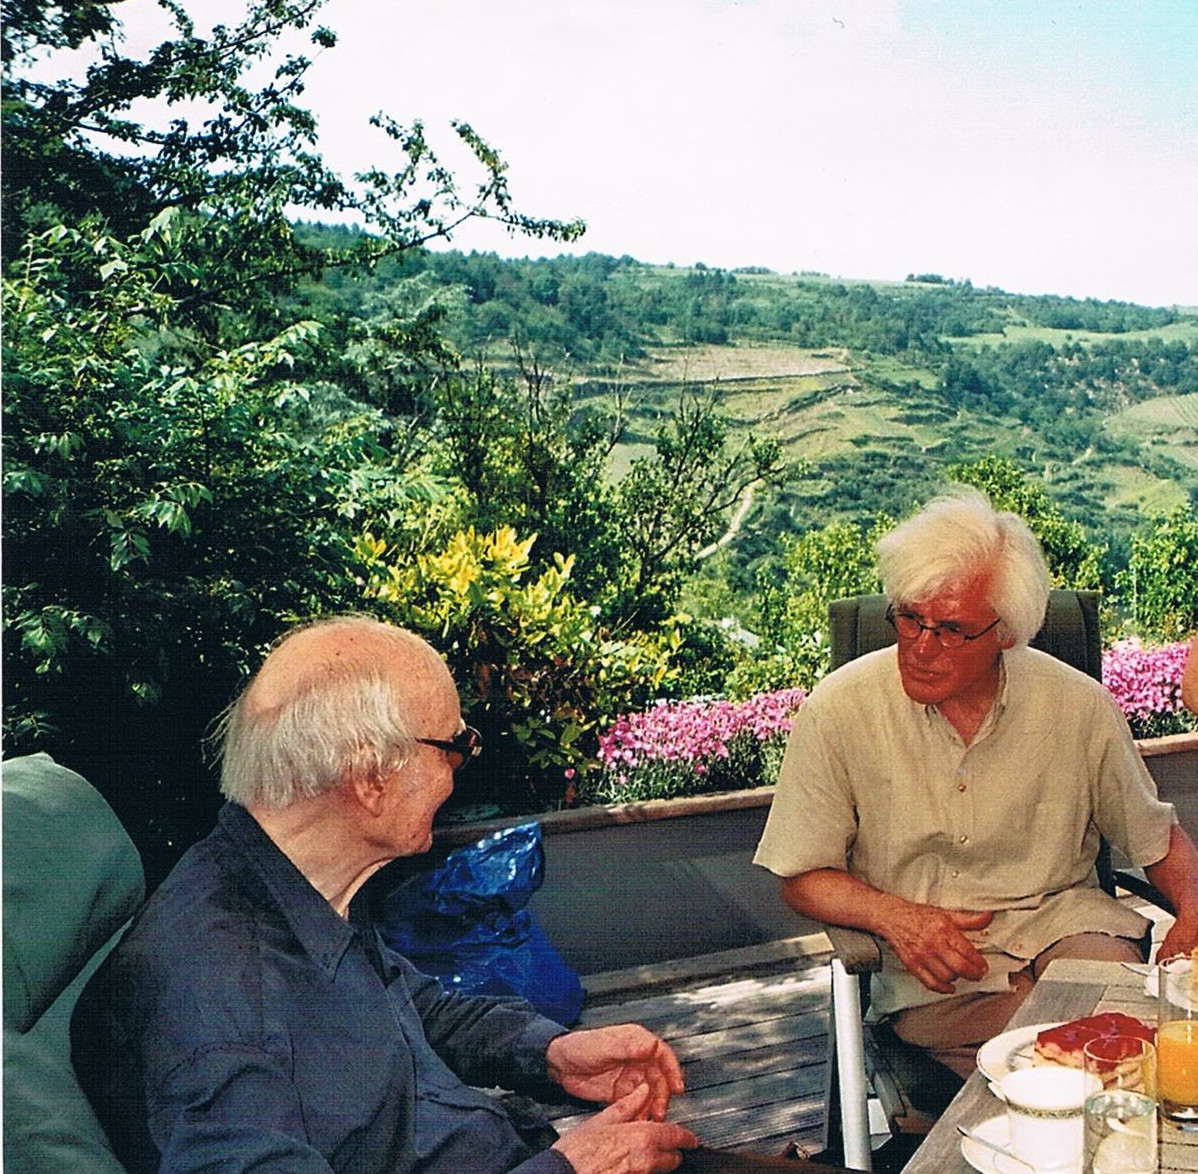 Karlheinz Deschner und Hermann Josef Schmidt auf dem Balkon in „Haus Weitblick“ der Giordano-Bruno-Stiftung, 23. Mai 2012. (Foto: privat)